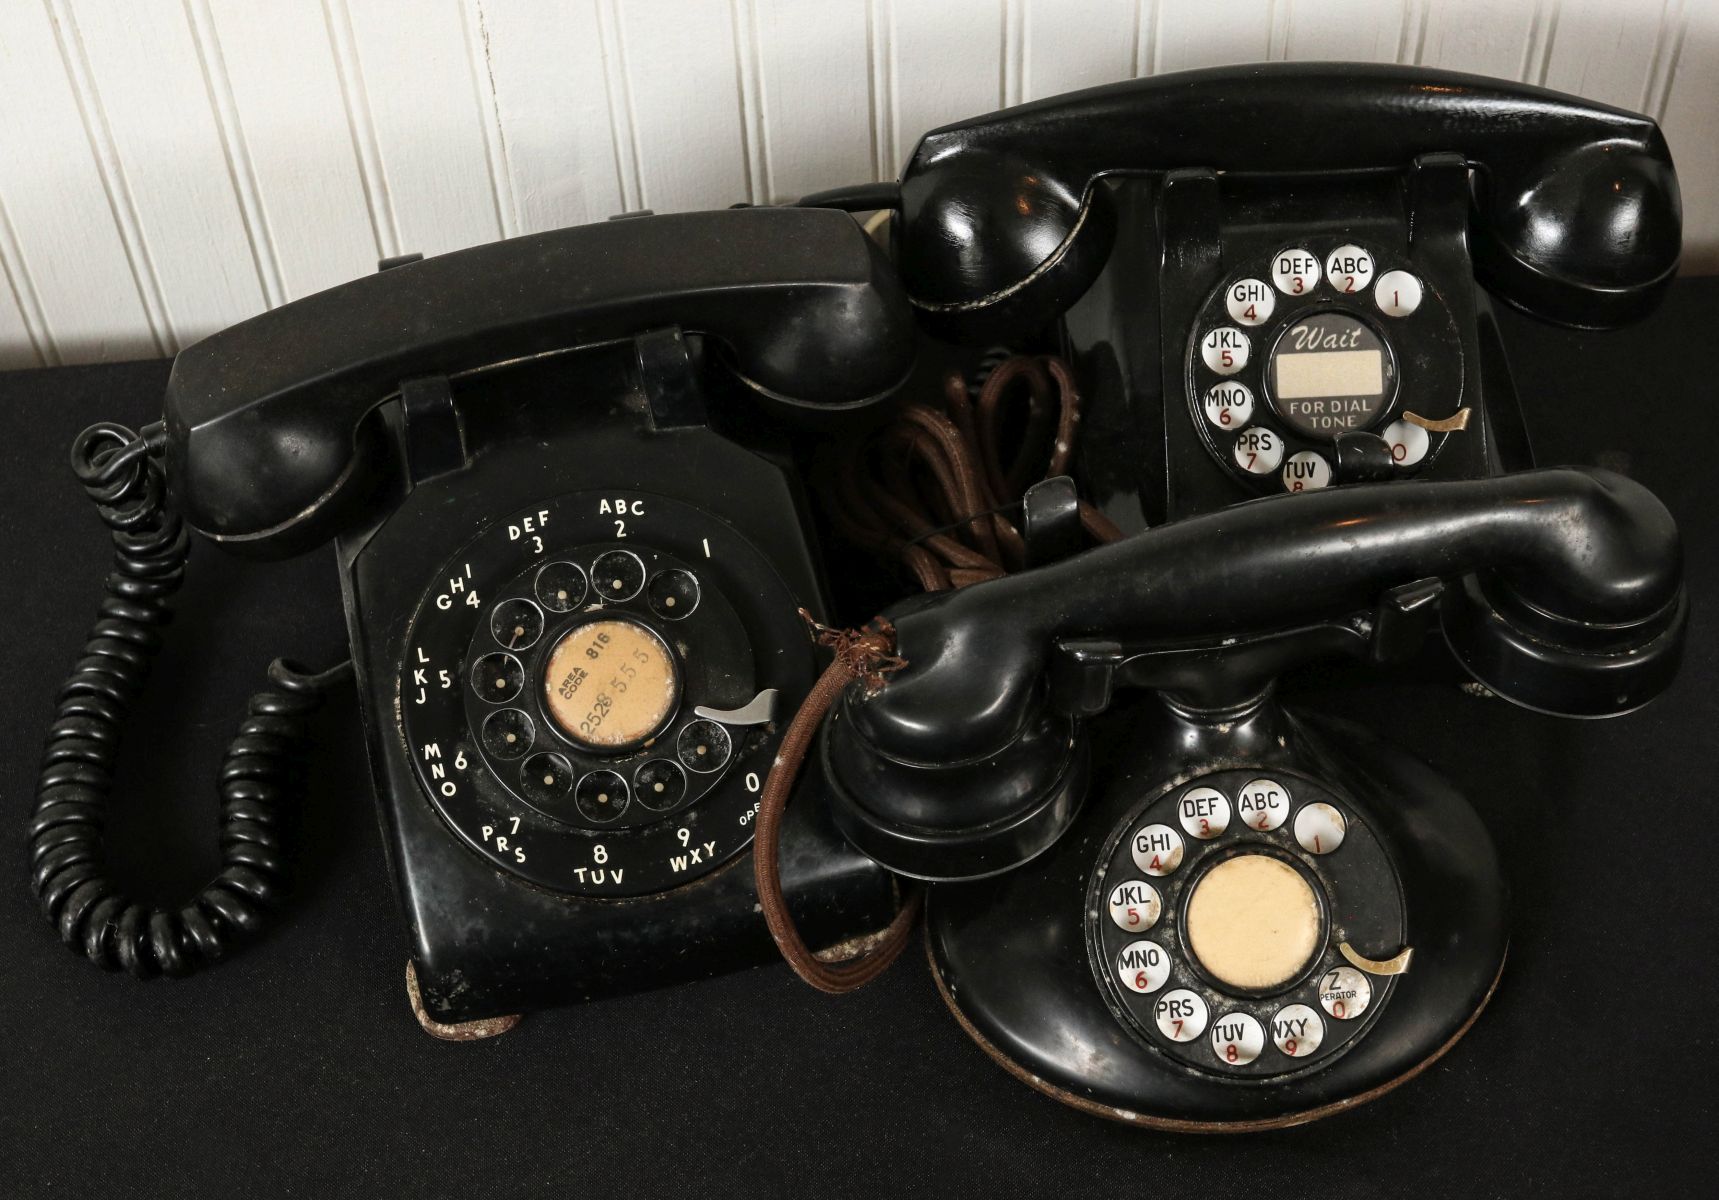 THREE VINTAGE ROTARY TELEPHONES